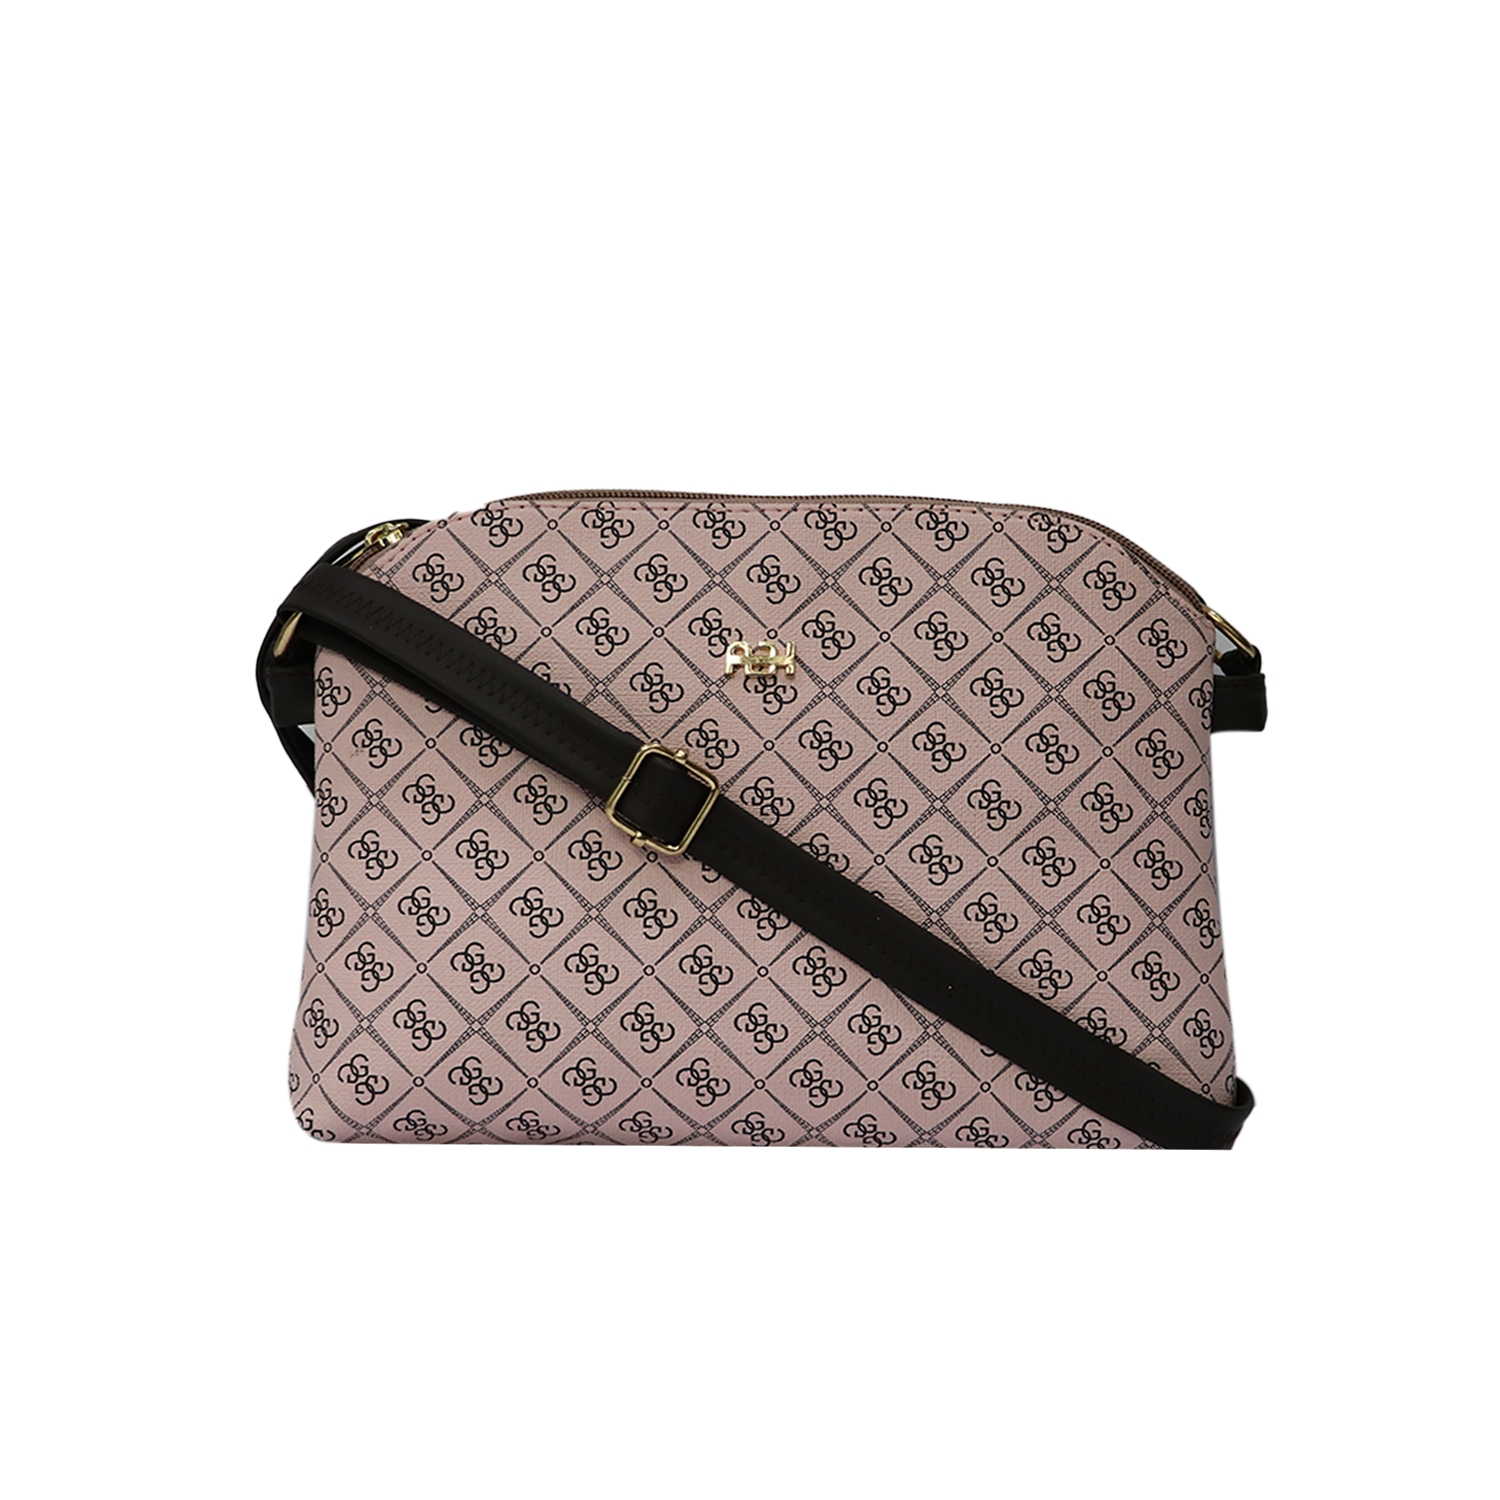 EMM | EMM's Pink Large Leather Stylish Sling Bag